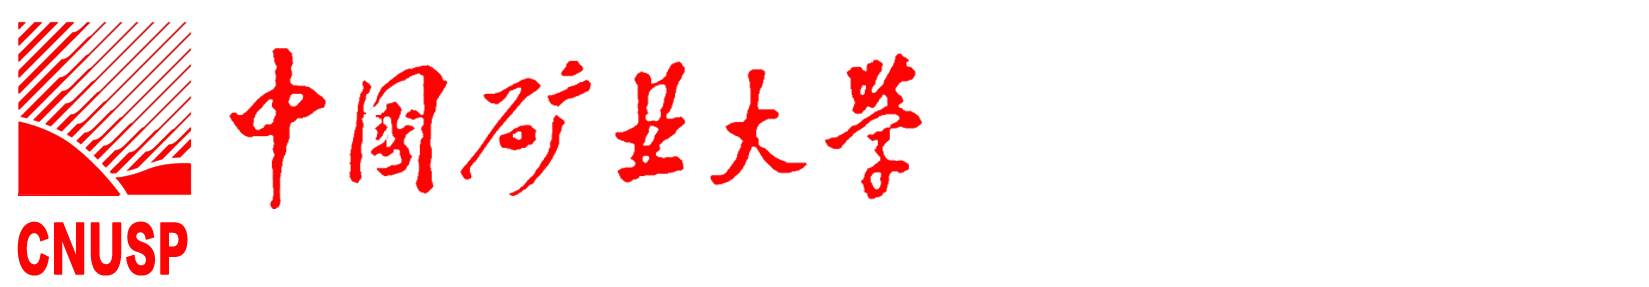 中國礦業大學國家大學科技園網站站標